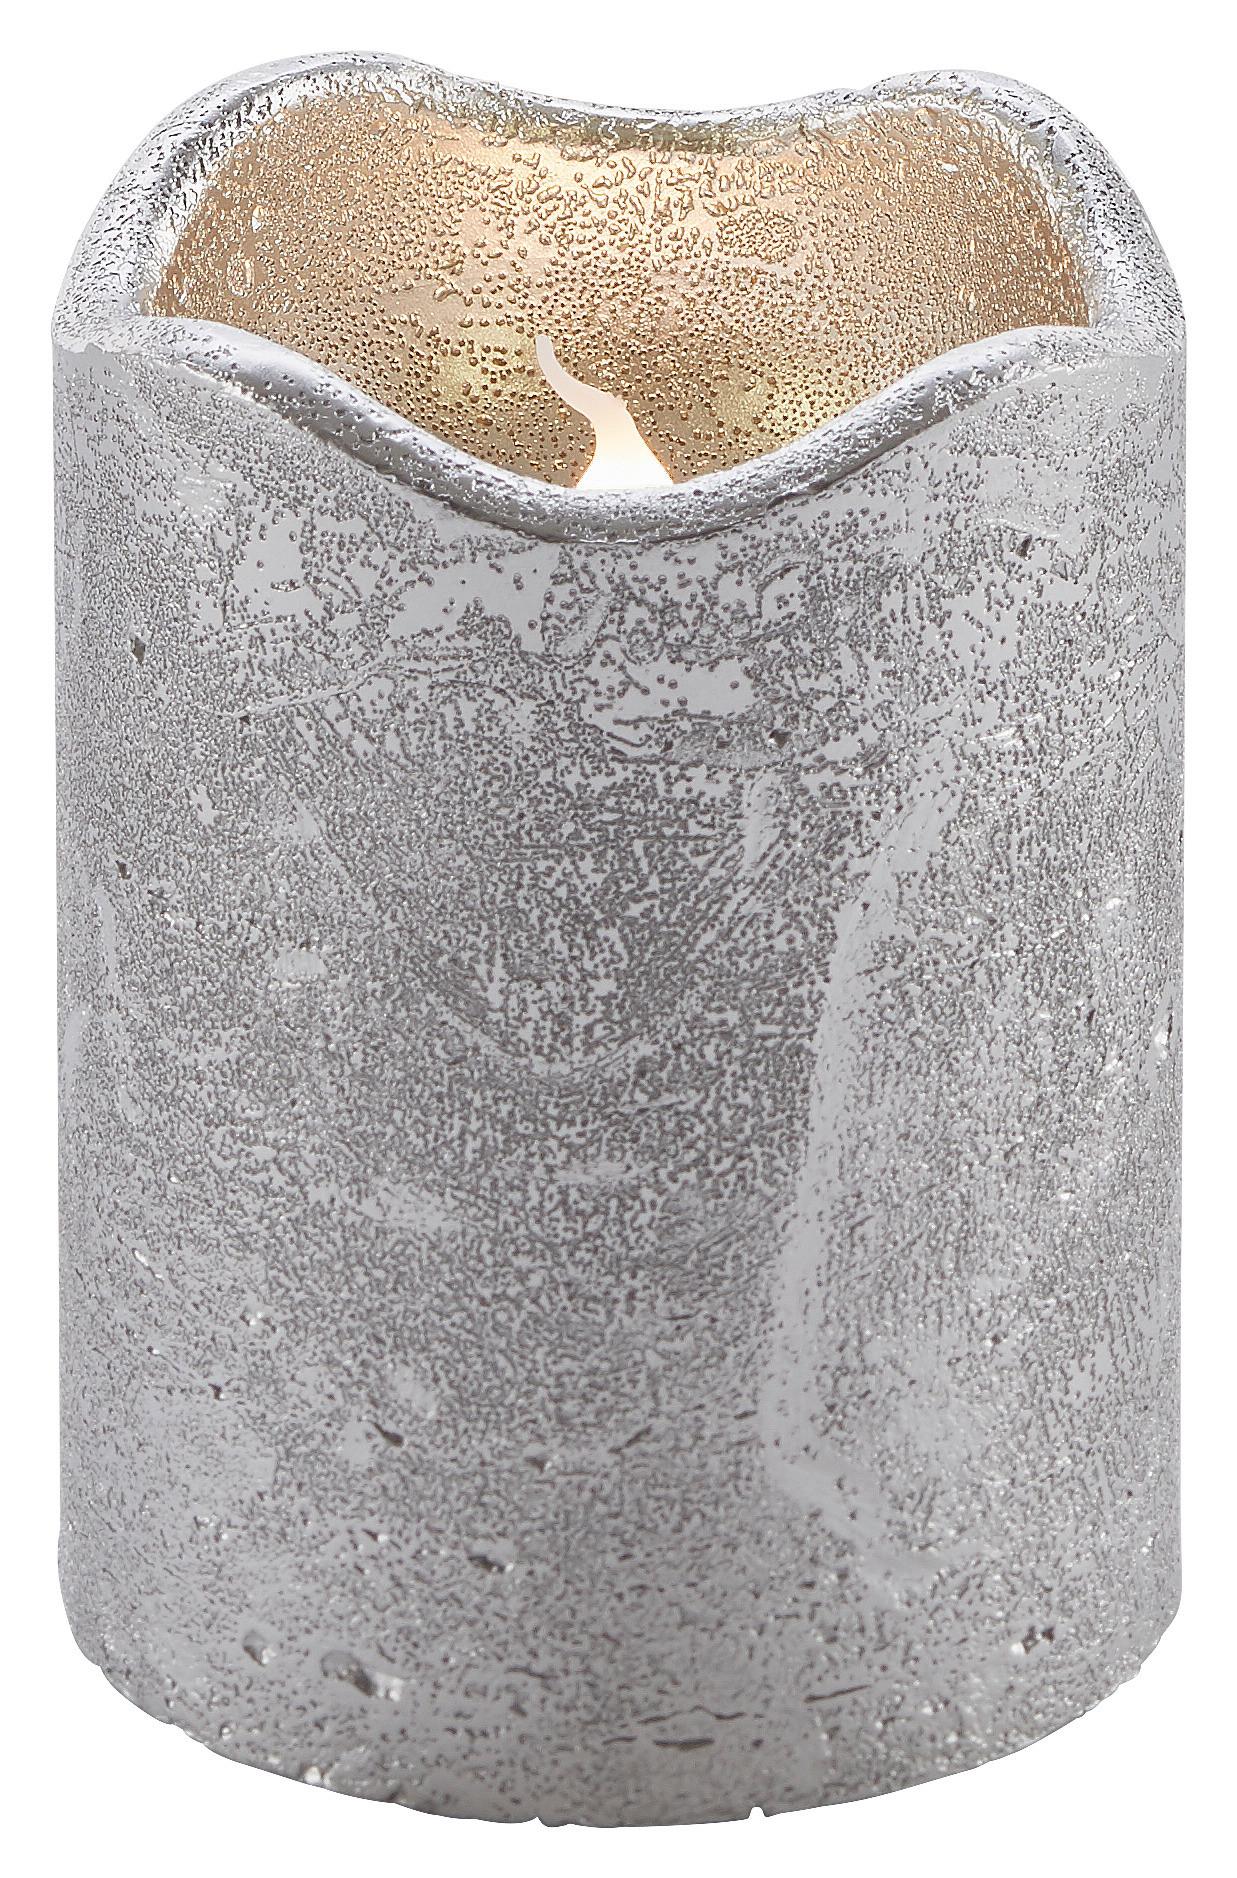 Kerze Loa in Silberfarben - Silberfarben, MODERN, Naturmaterialien (9cm) - Bessagi Home